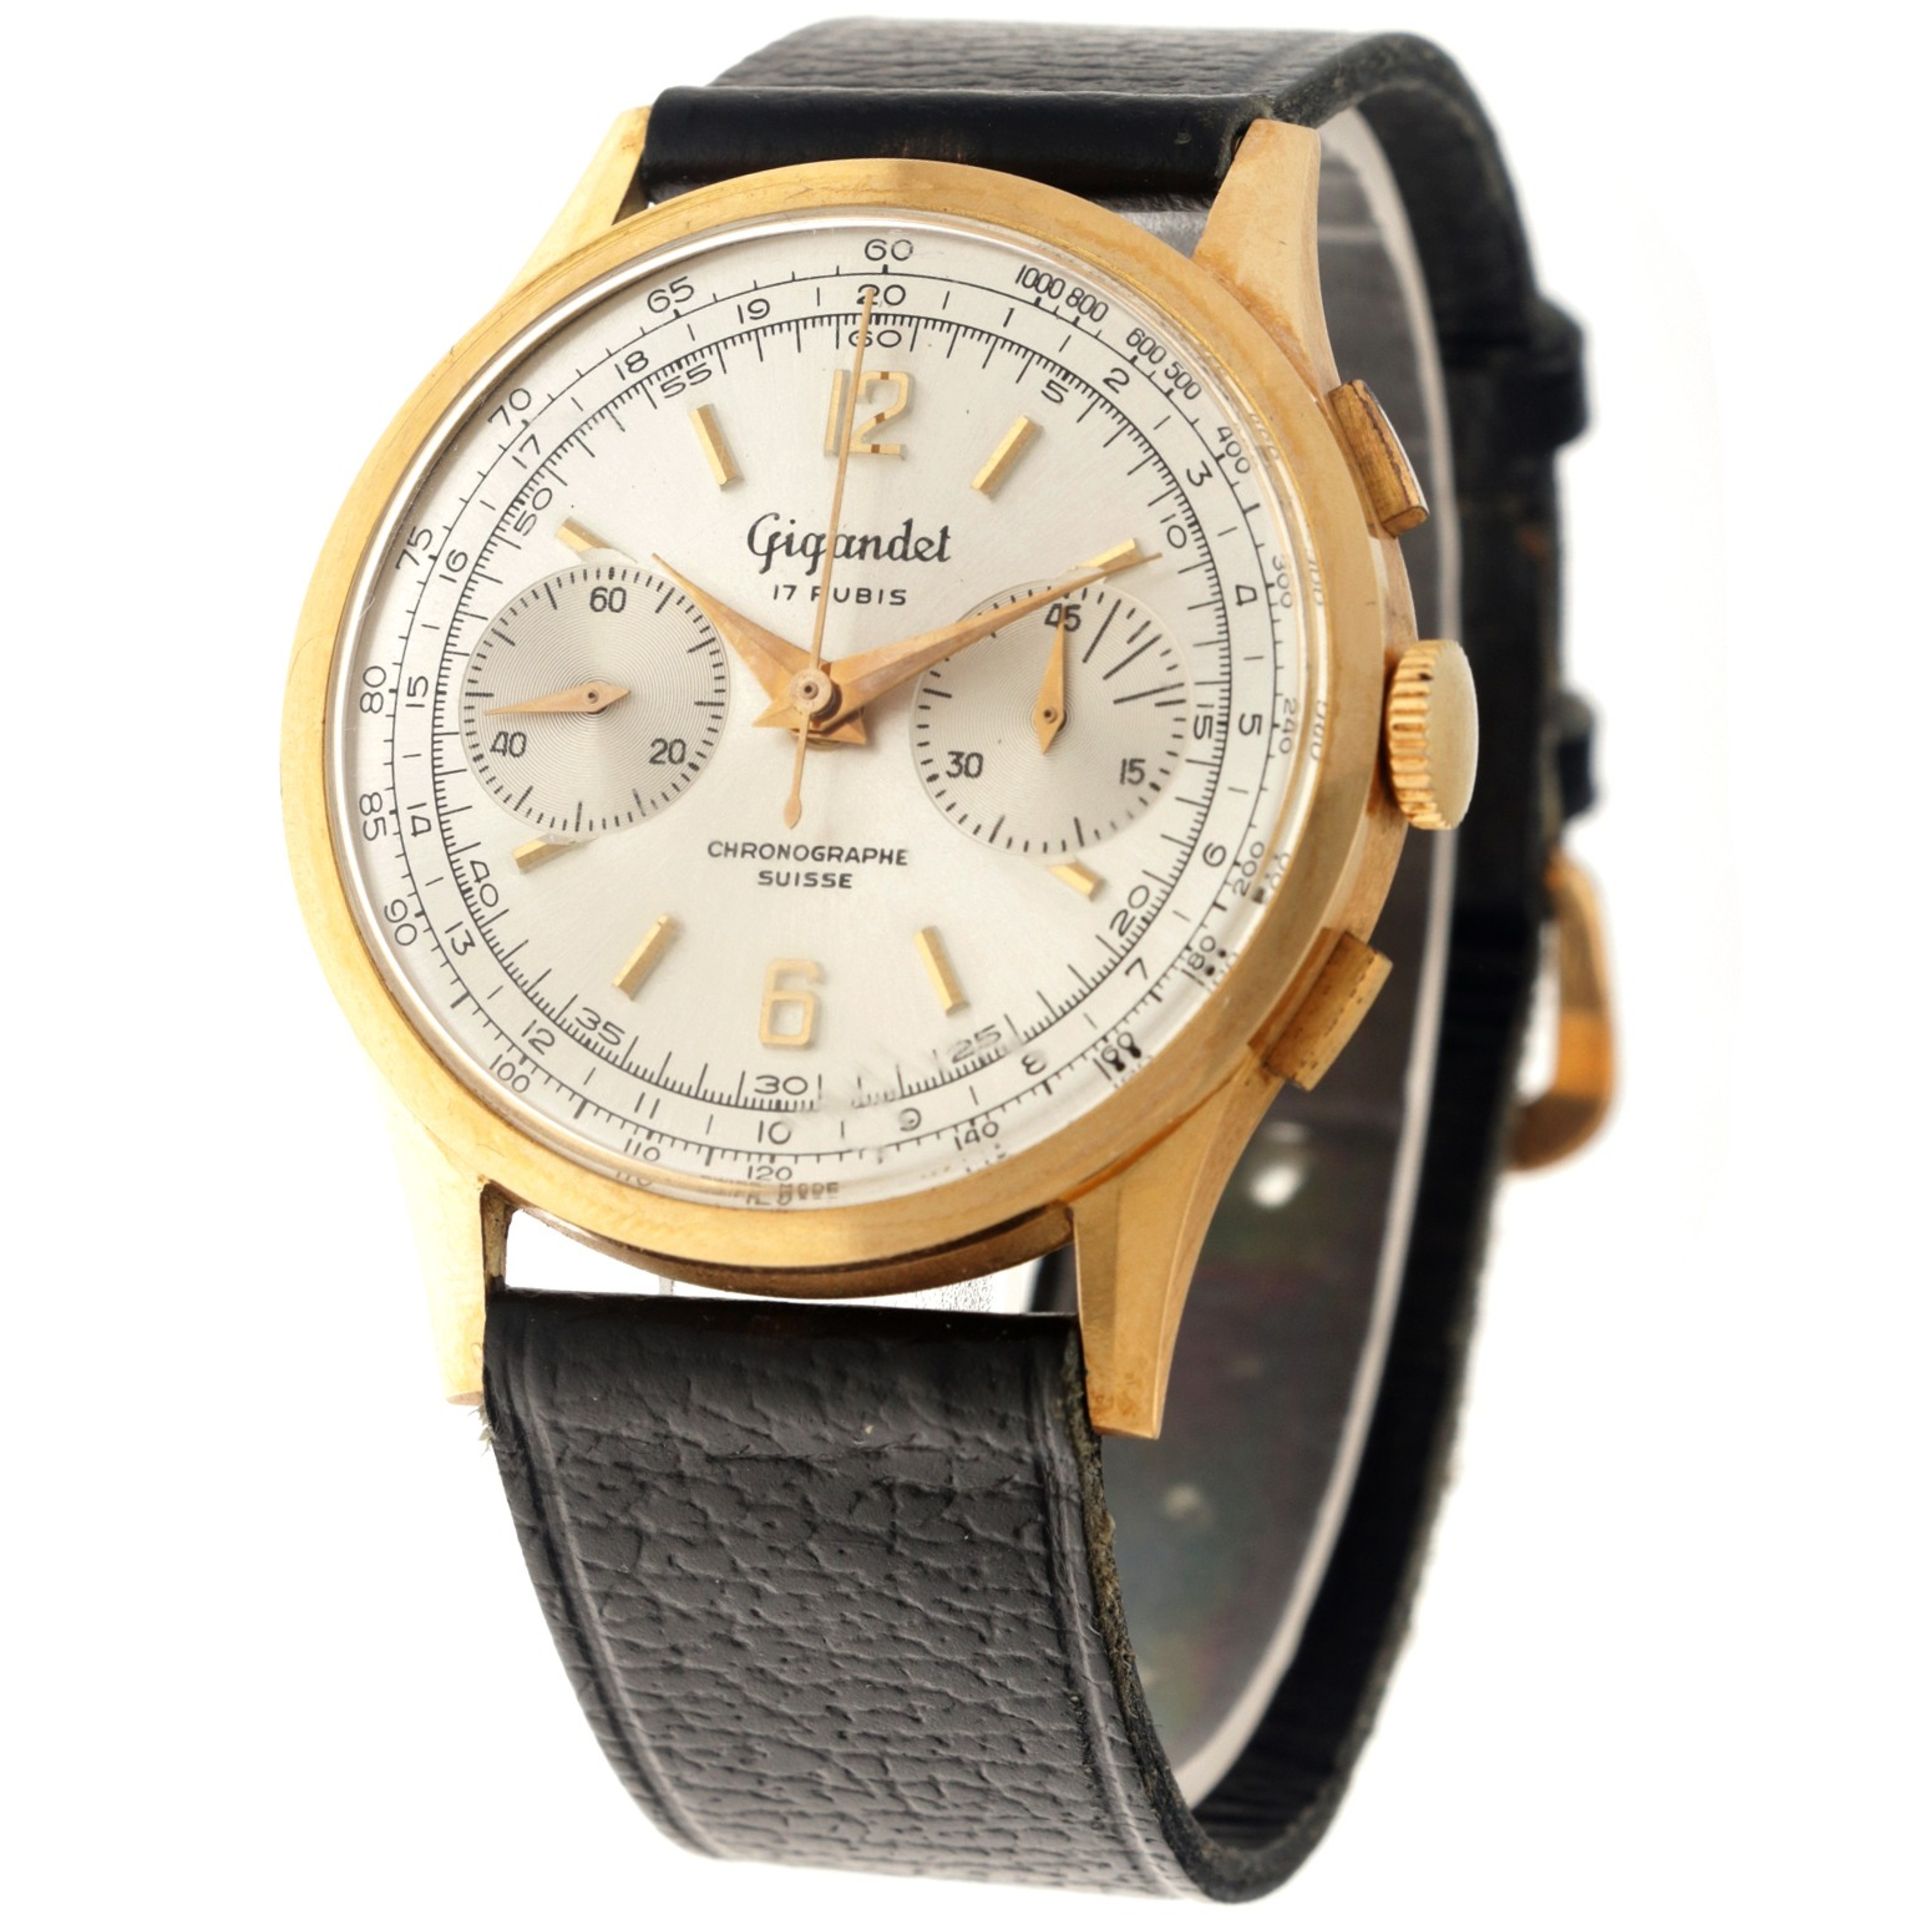 No Reserve - Gigandet Vintage  Chronograph 18K. - Men's watch.  - Image 2 of 6